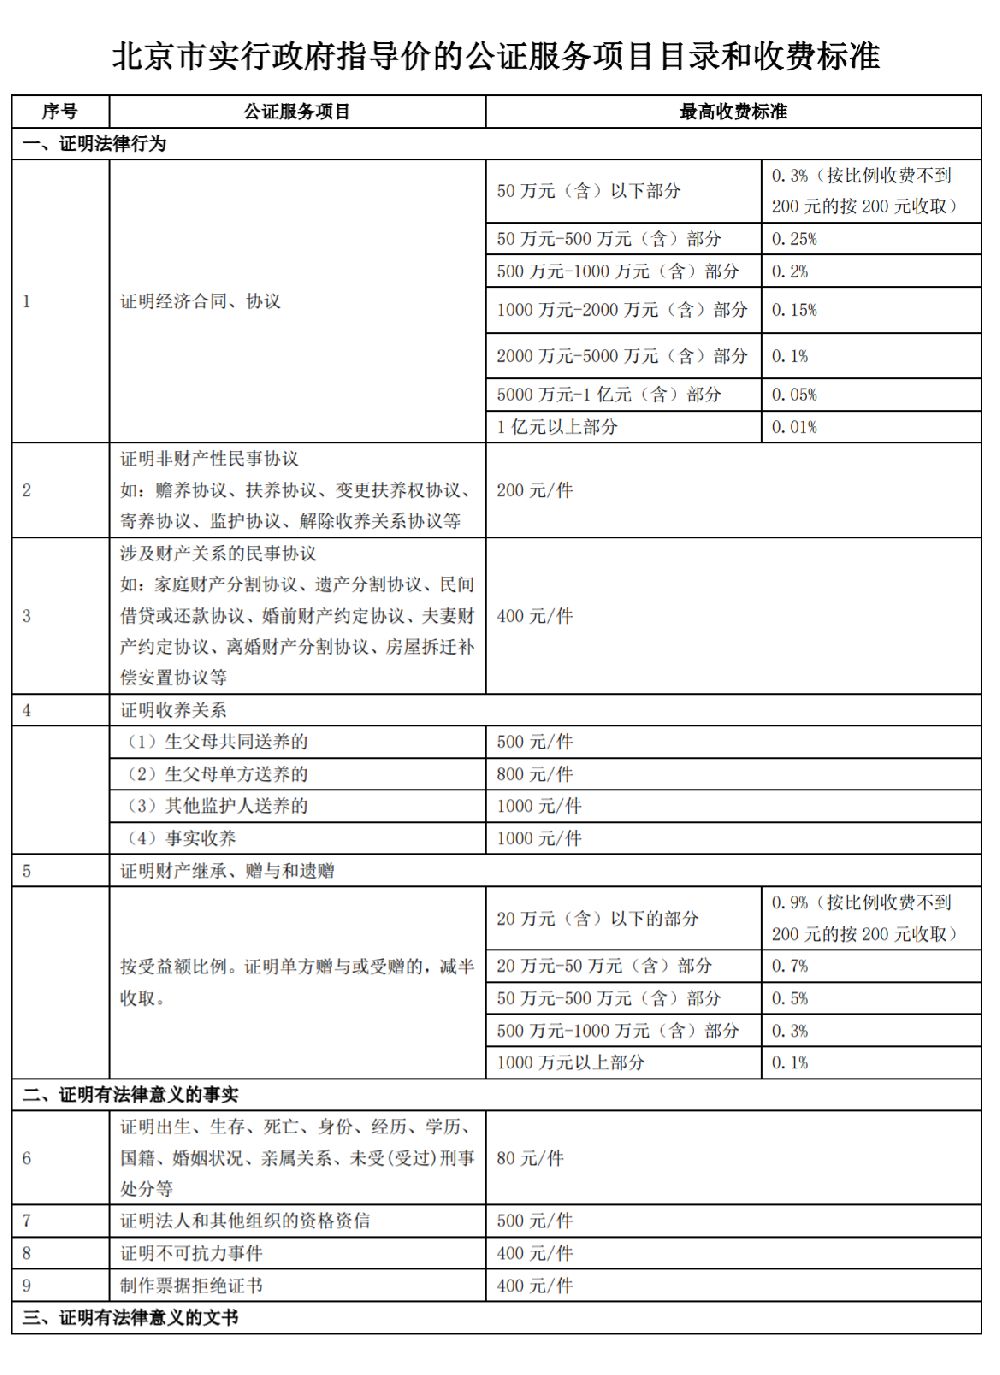 2019年2月25日起北京市部分公证服务收费标准